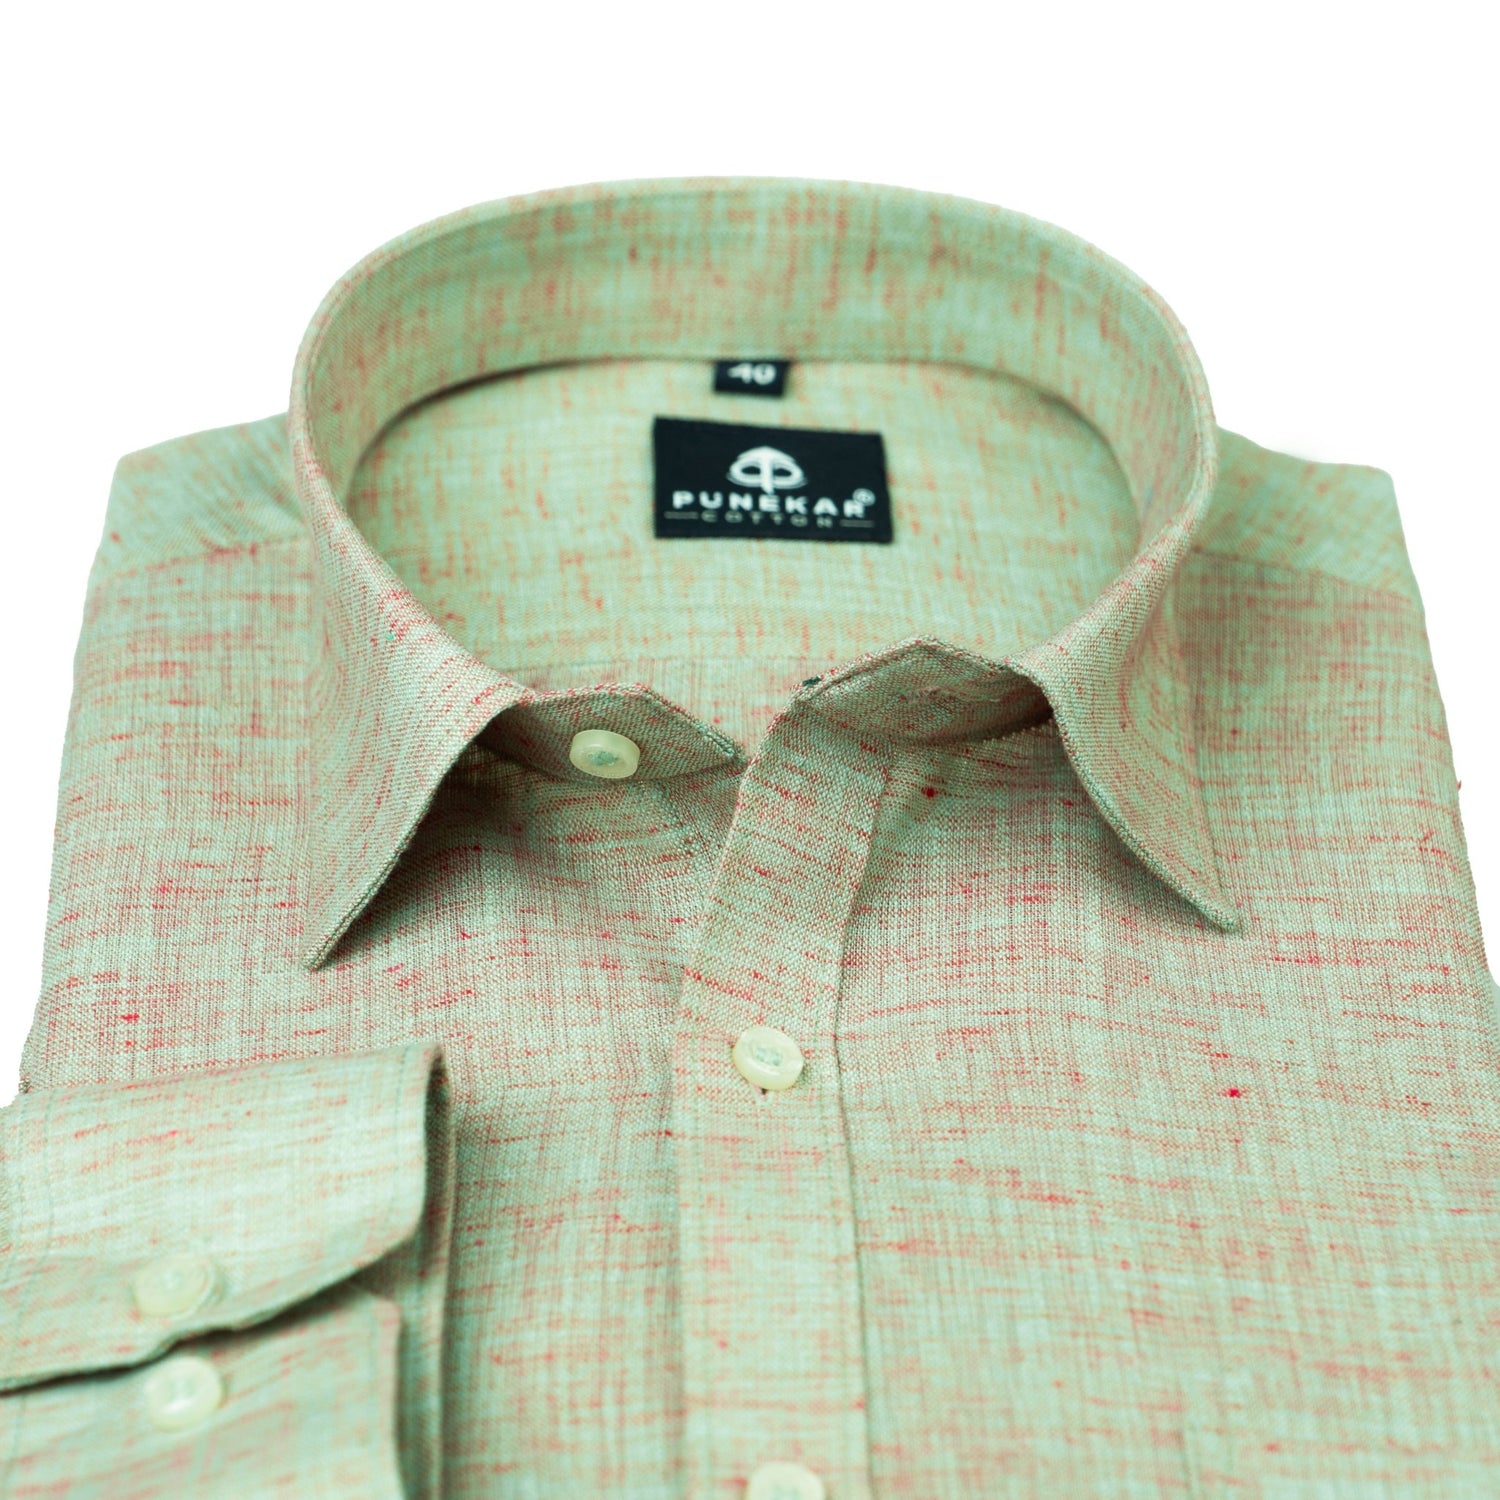 Green Pink Color Poly Cotton Shirt For Men - Punekar Cotton